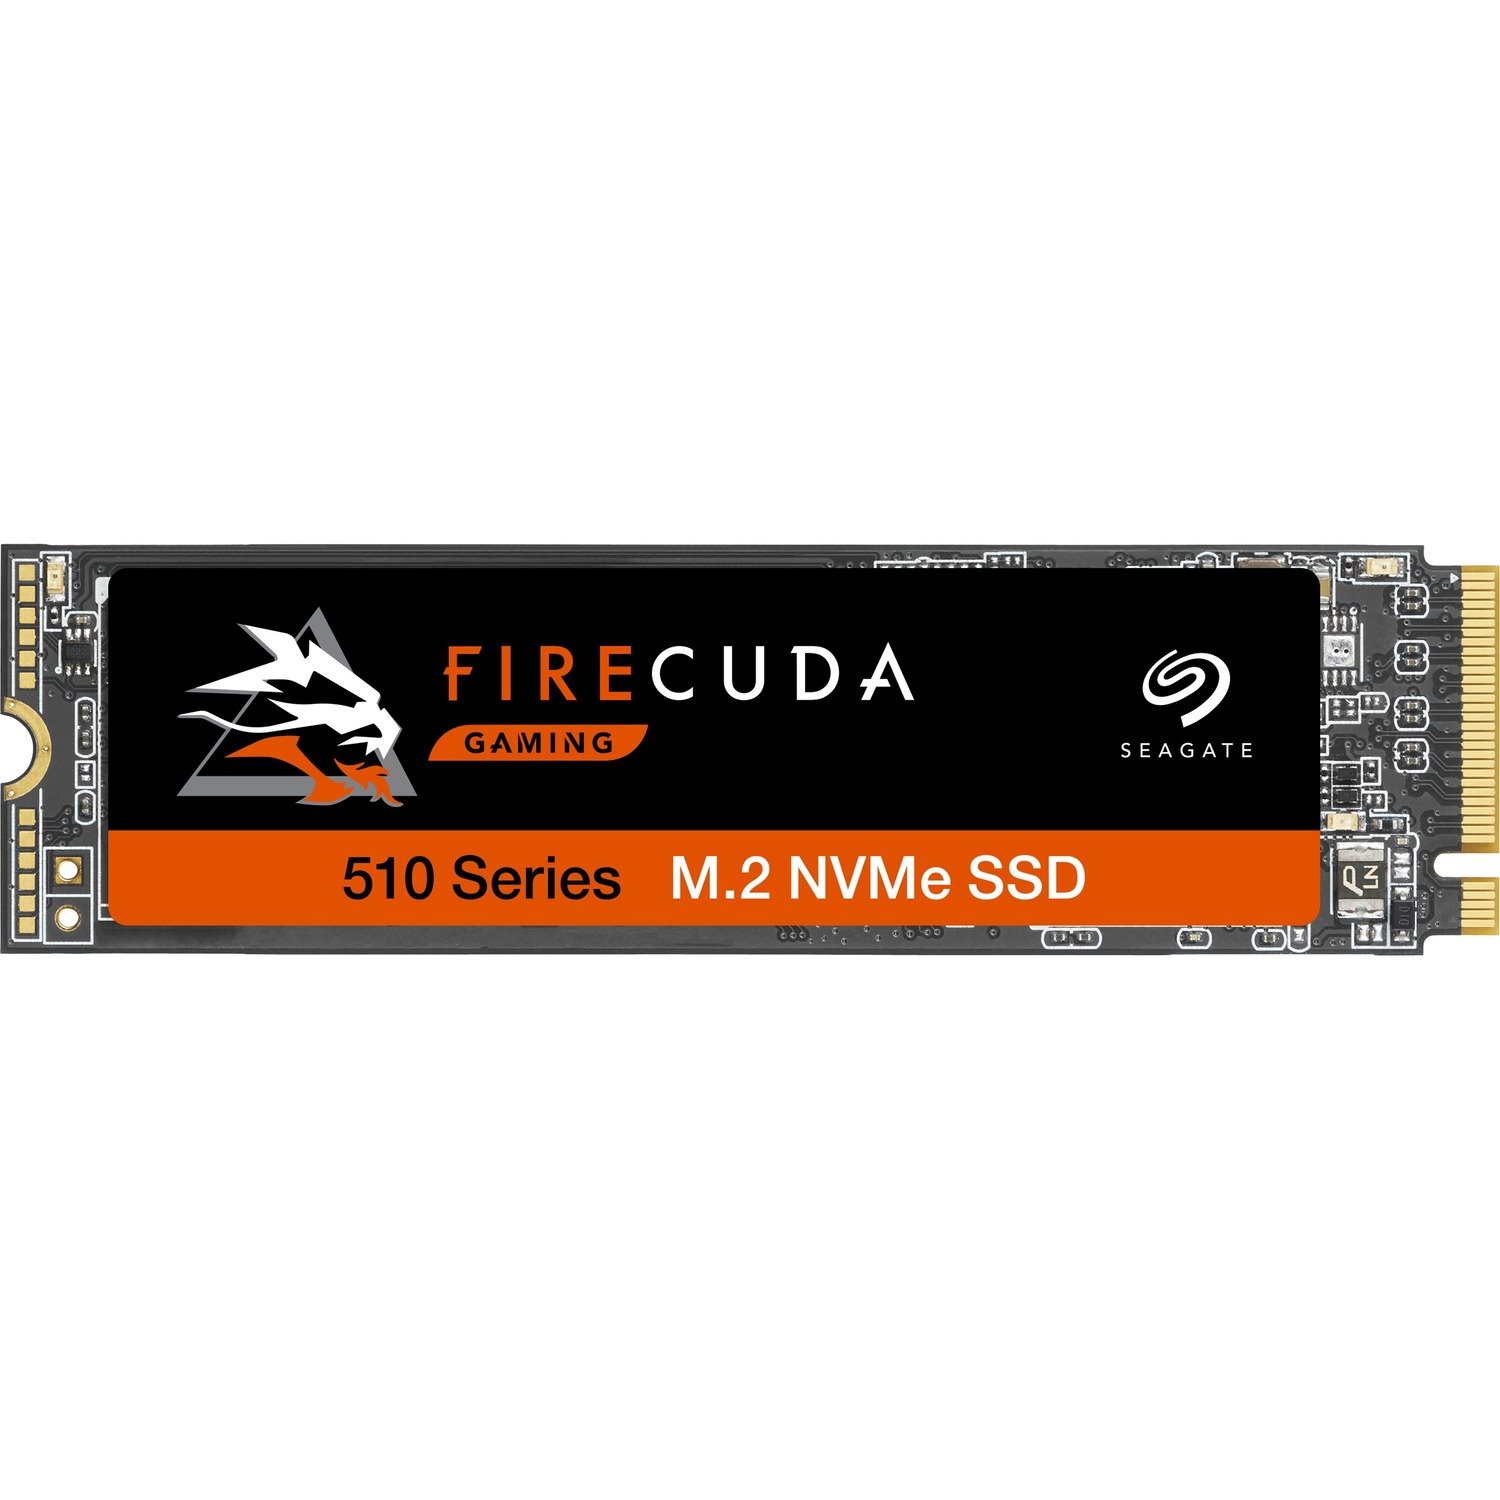 Seagate FireCuda 510 ZP500GM3A001 500 GB Solid State Drive - M.2 Internal - PCI Express